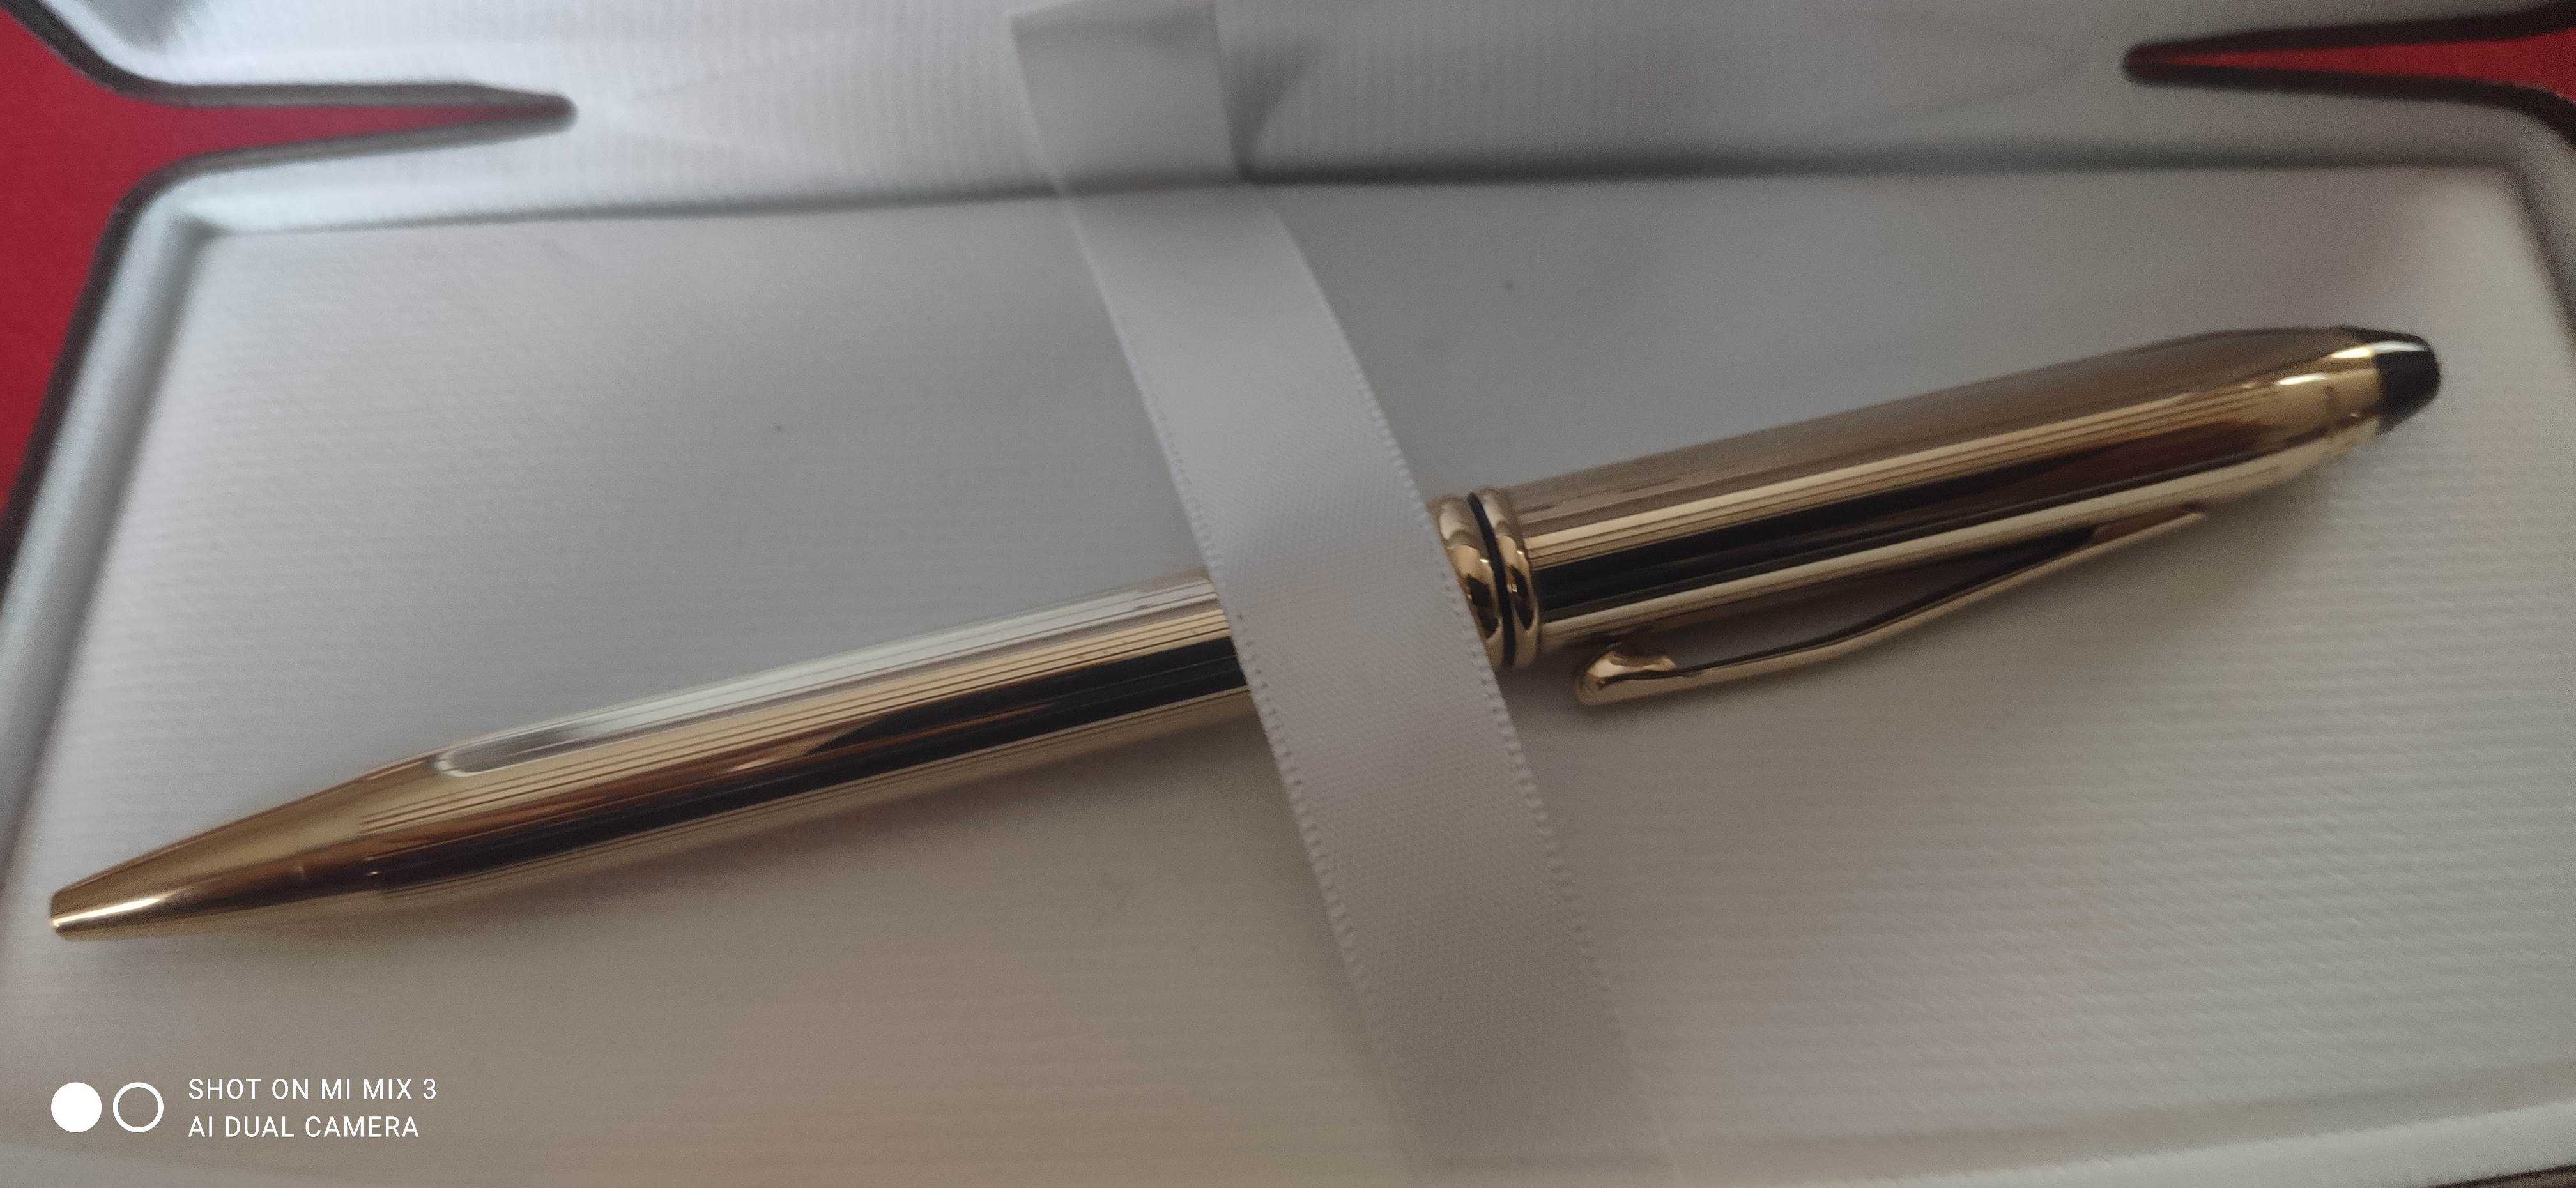 Długopis Cross Townsend GT nowy złoty 10k